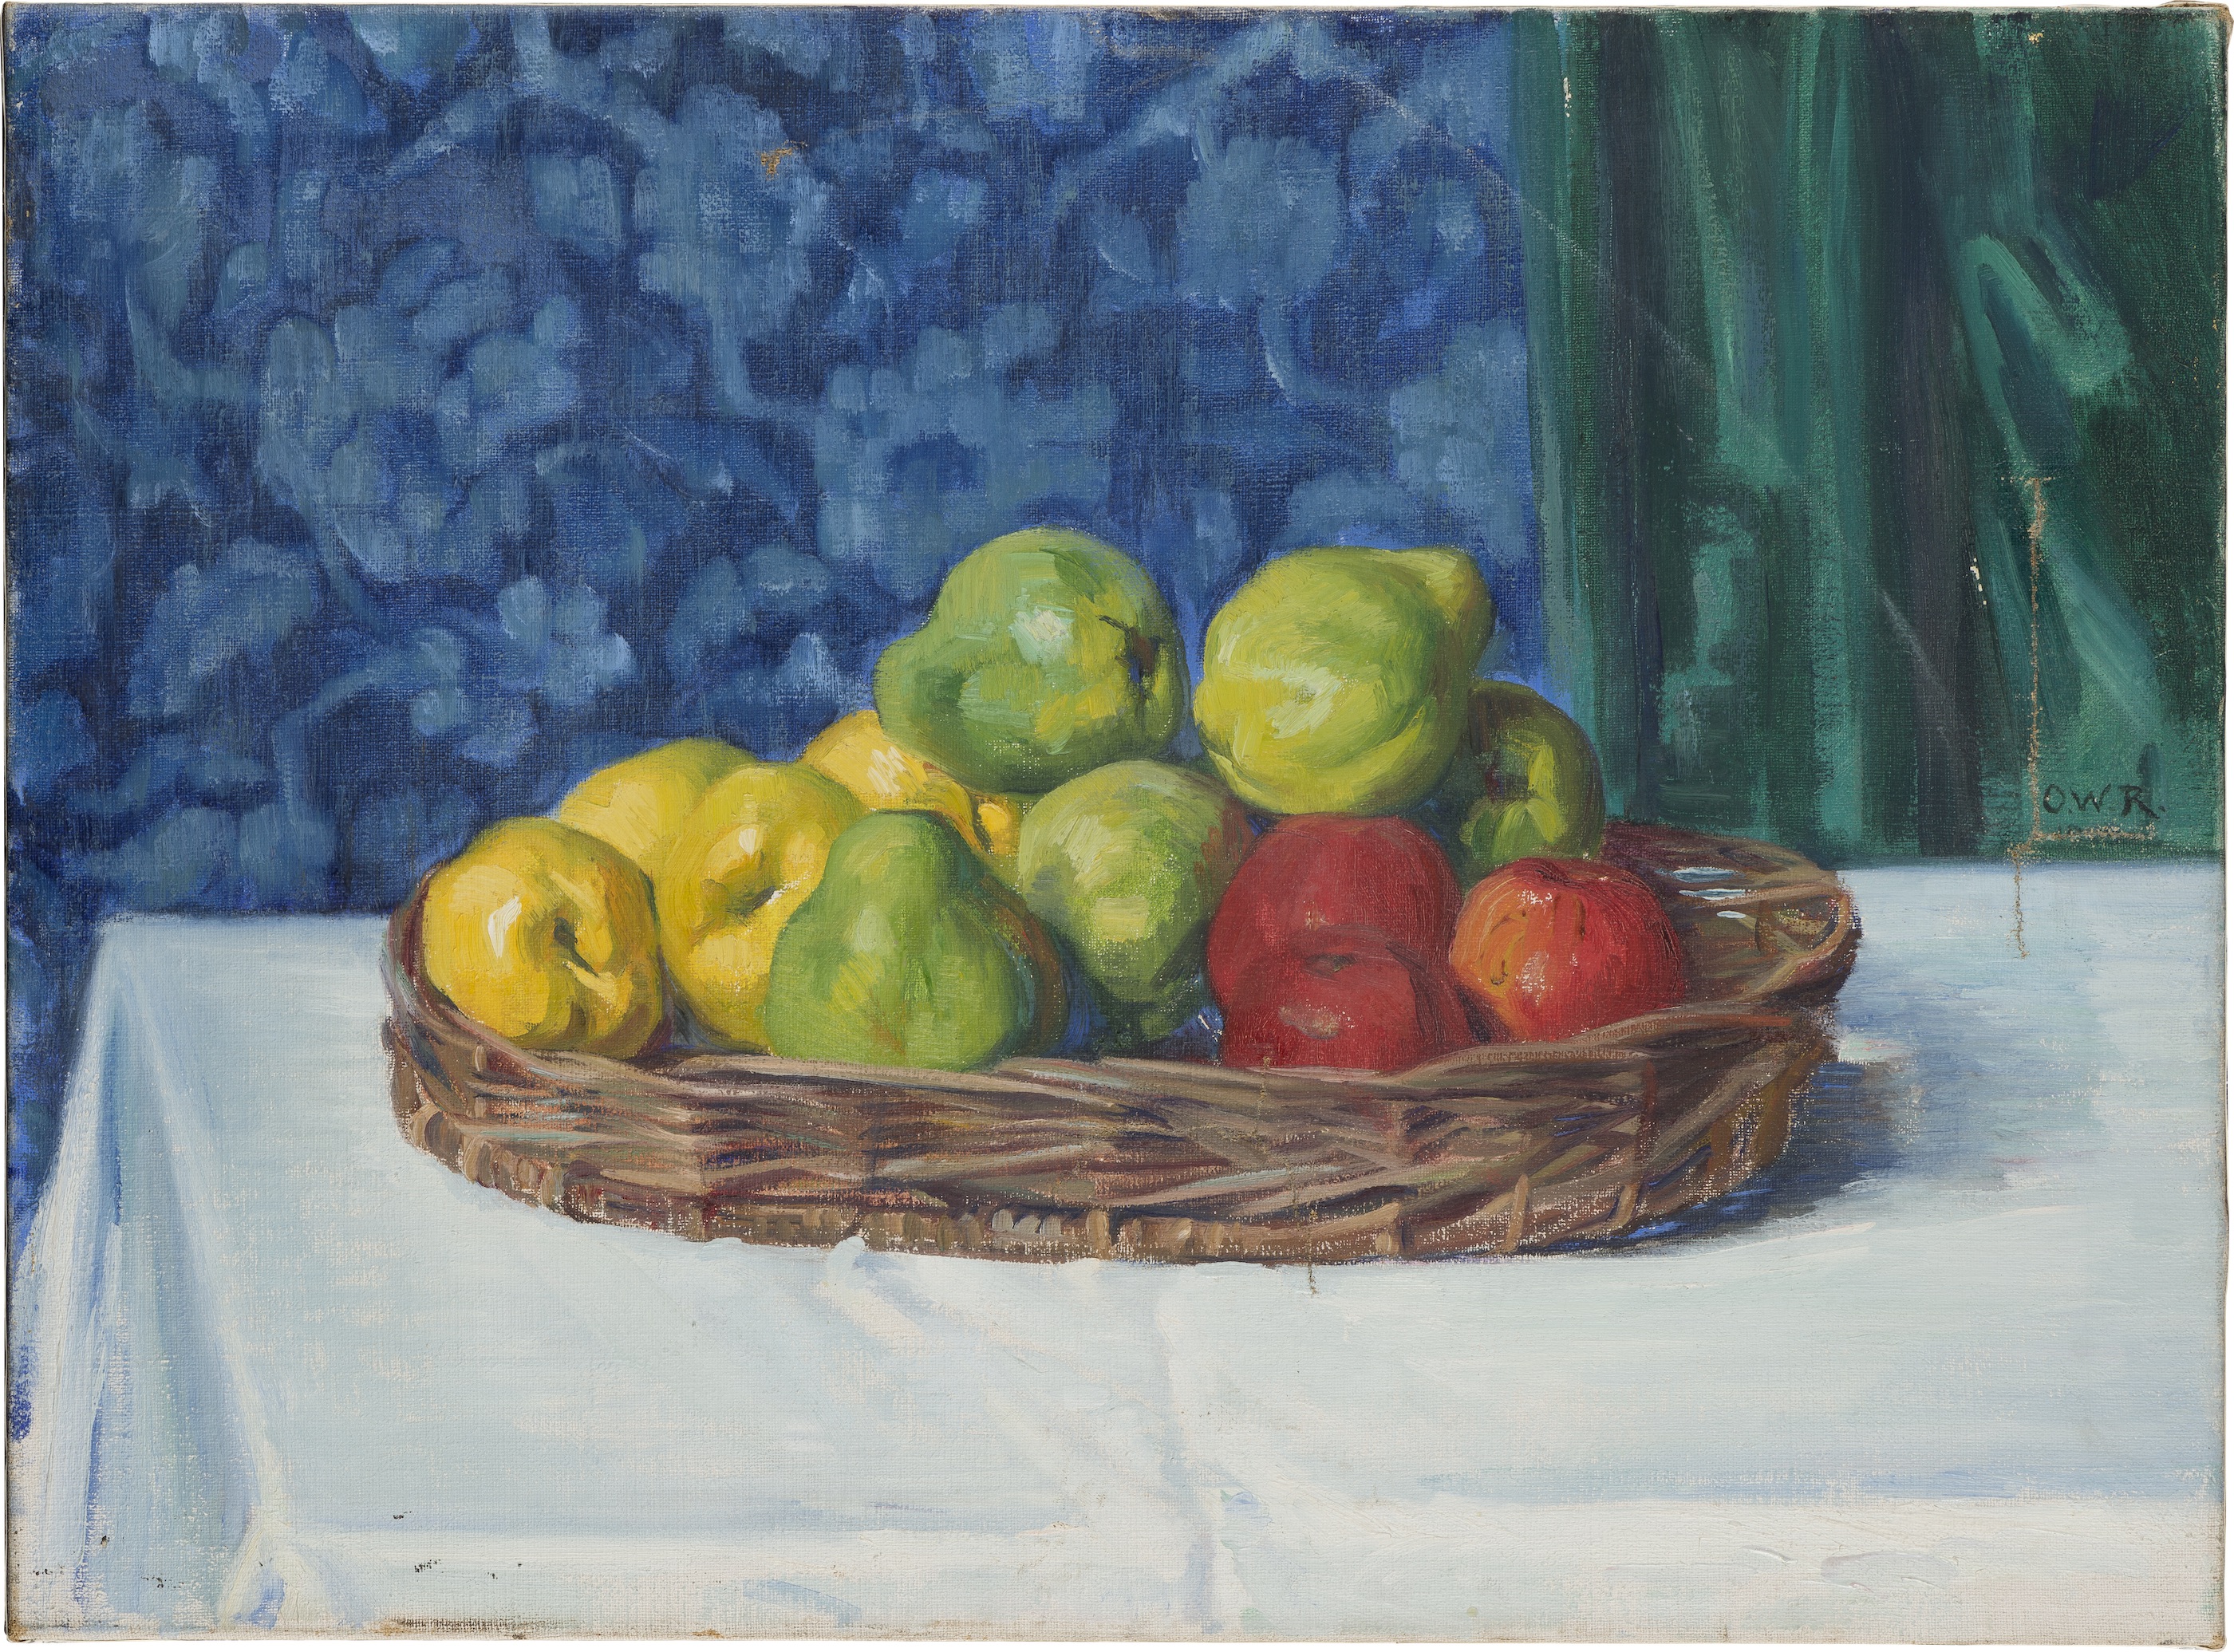 靜物：桌上放着水果的籃子 by Ottilie W. Roederstein - 1909 年 - 58.6 x 79 釐米 